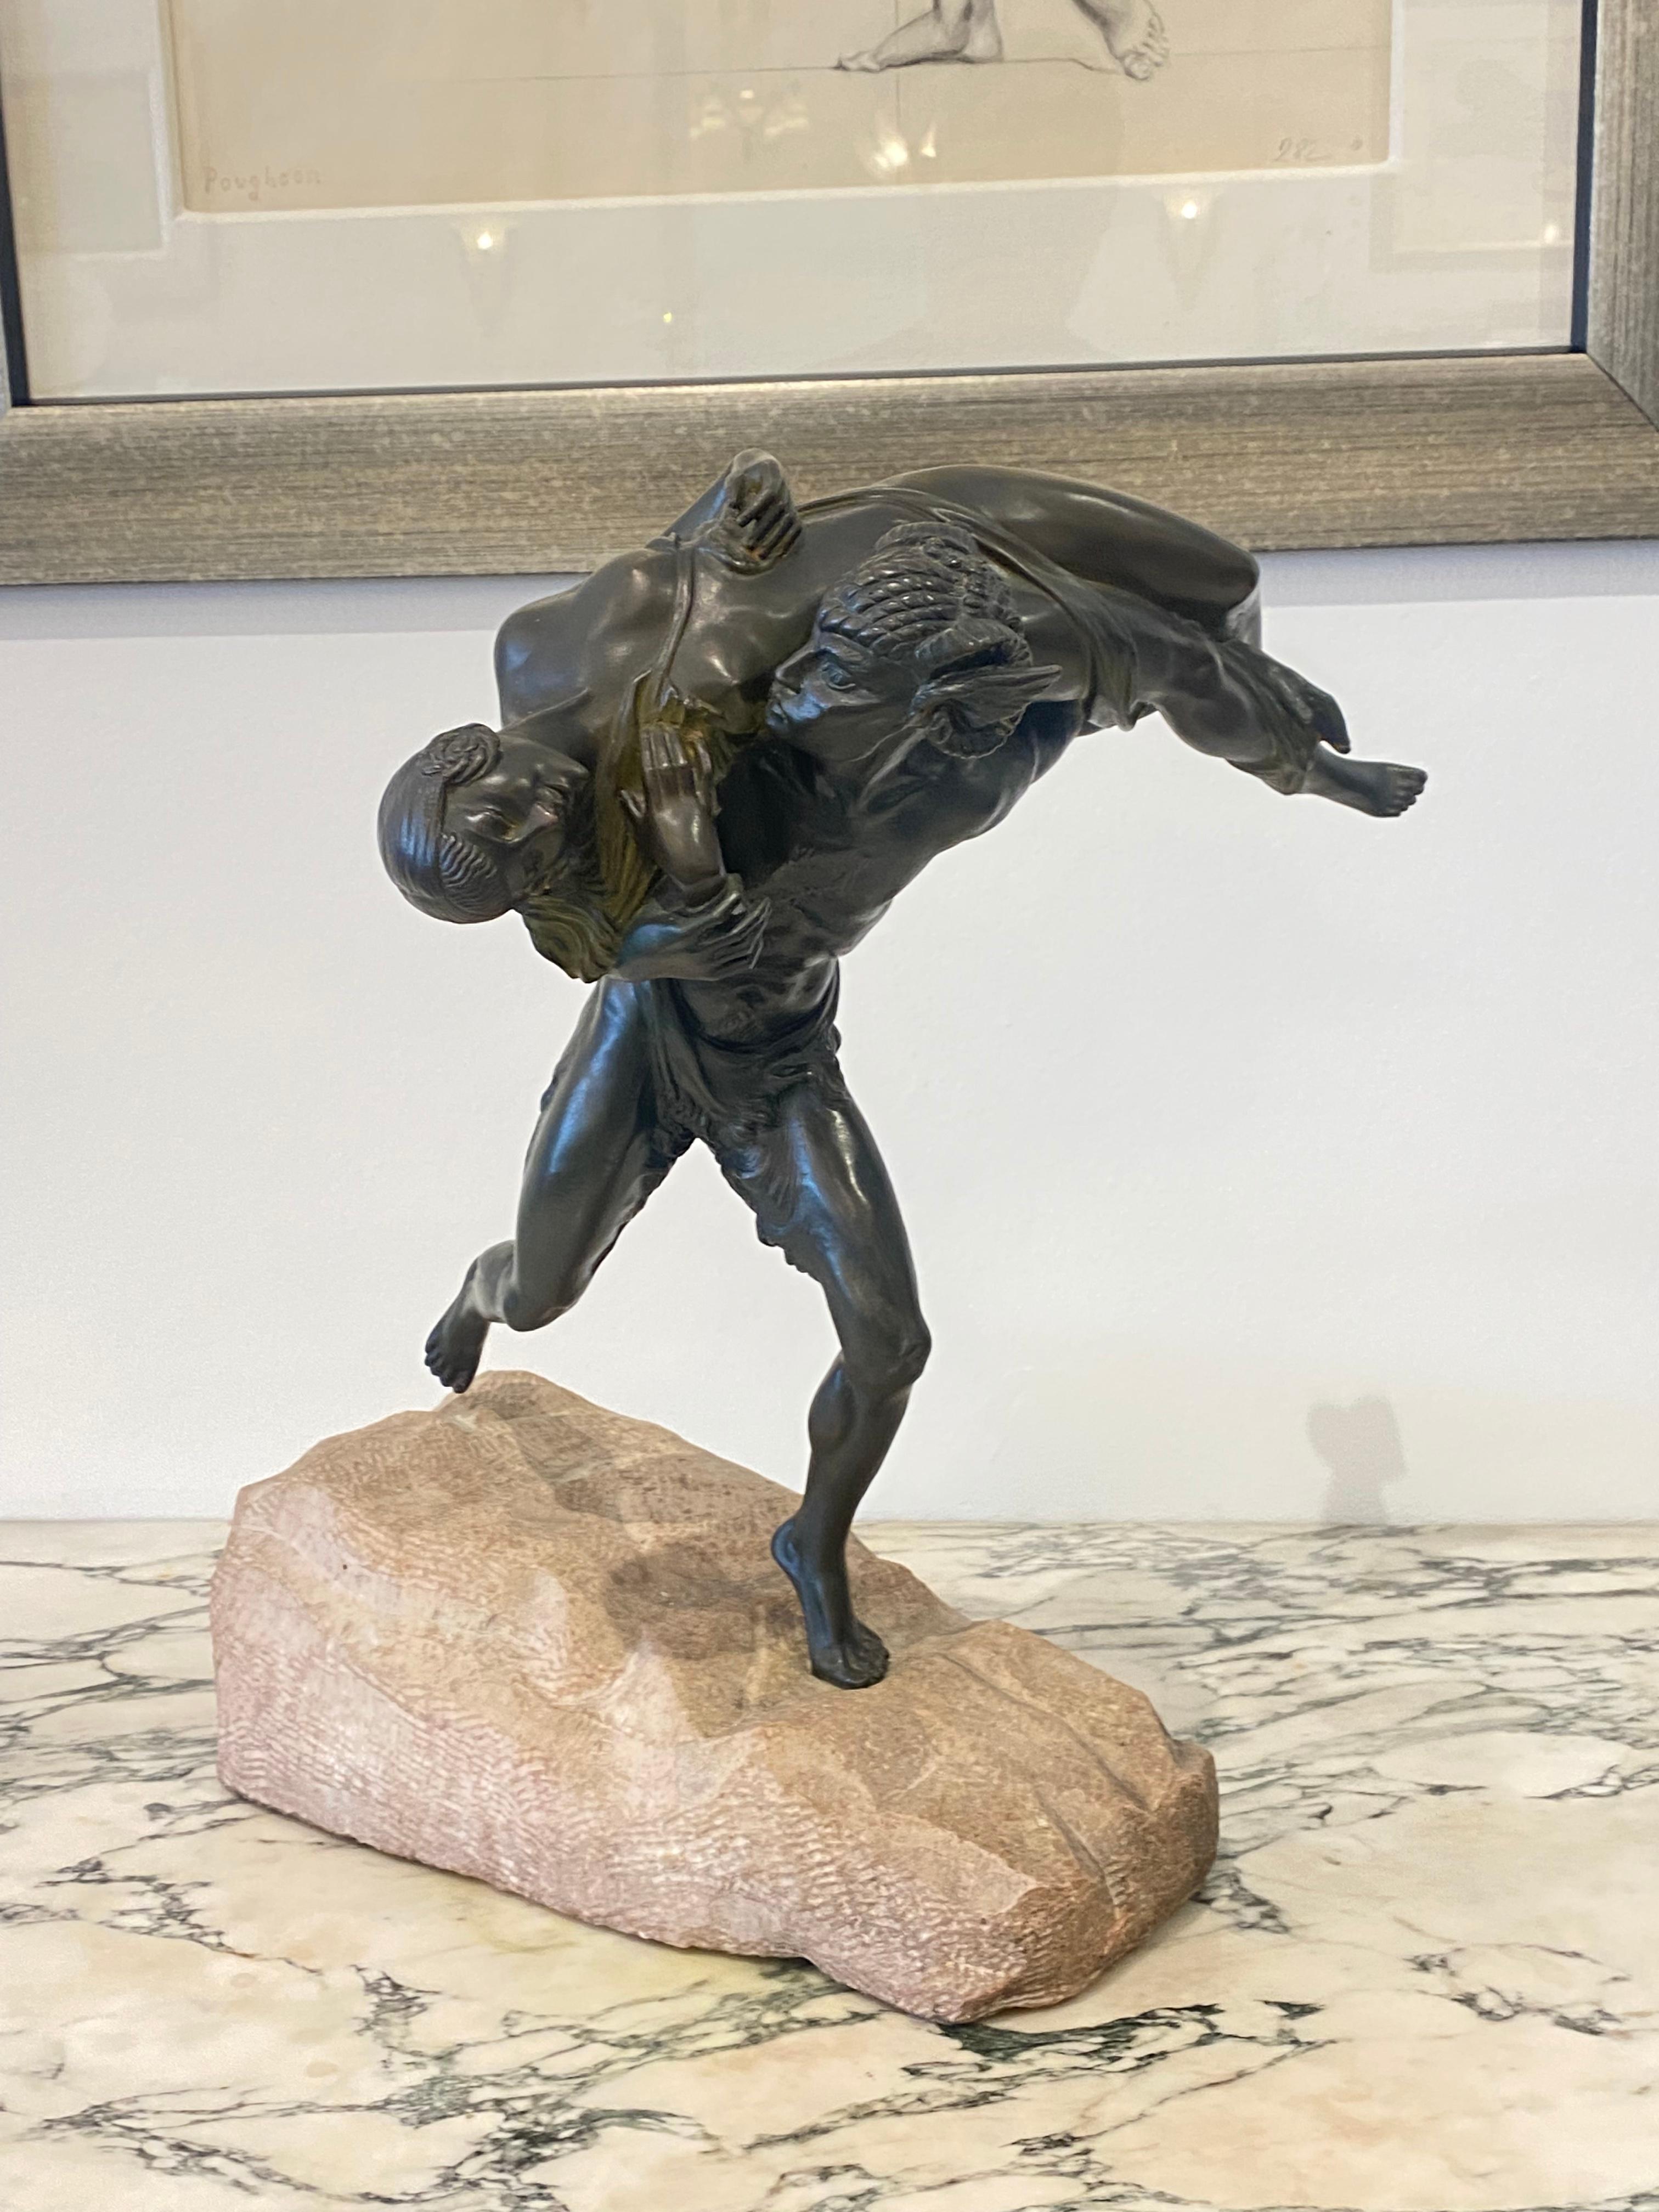 Sculpture Art Déco en bronze patiné à froid de Marcel-André Bouraine intitulée Satyre enlevant une nymphe. La pièce repose dans un rocher sculpté à la main.
Fabriqué en France 
Circa : 1930
Signature : A. Bouraine.